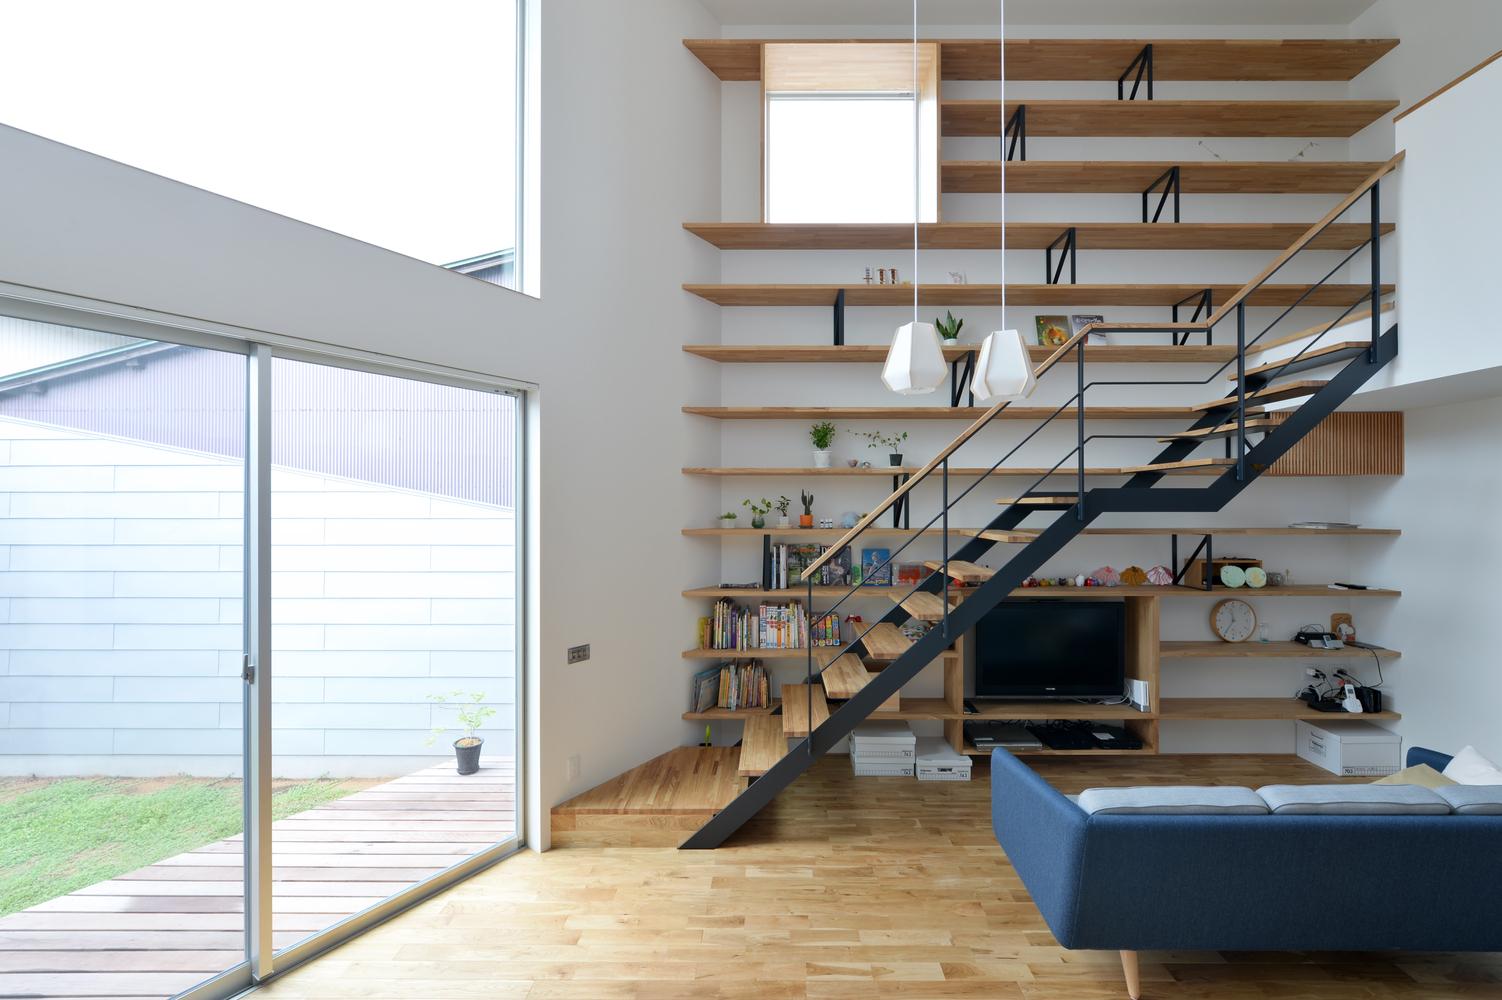 和式木系住宅空間感十足 為家庭生活增添色彩